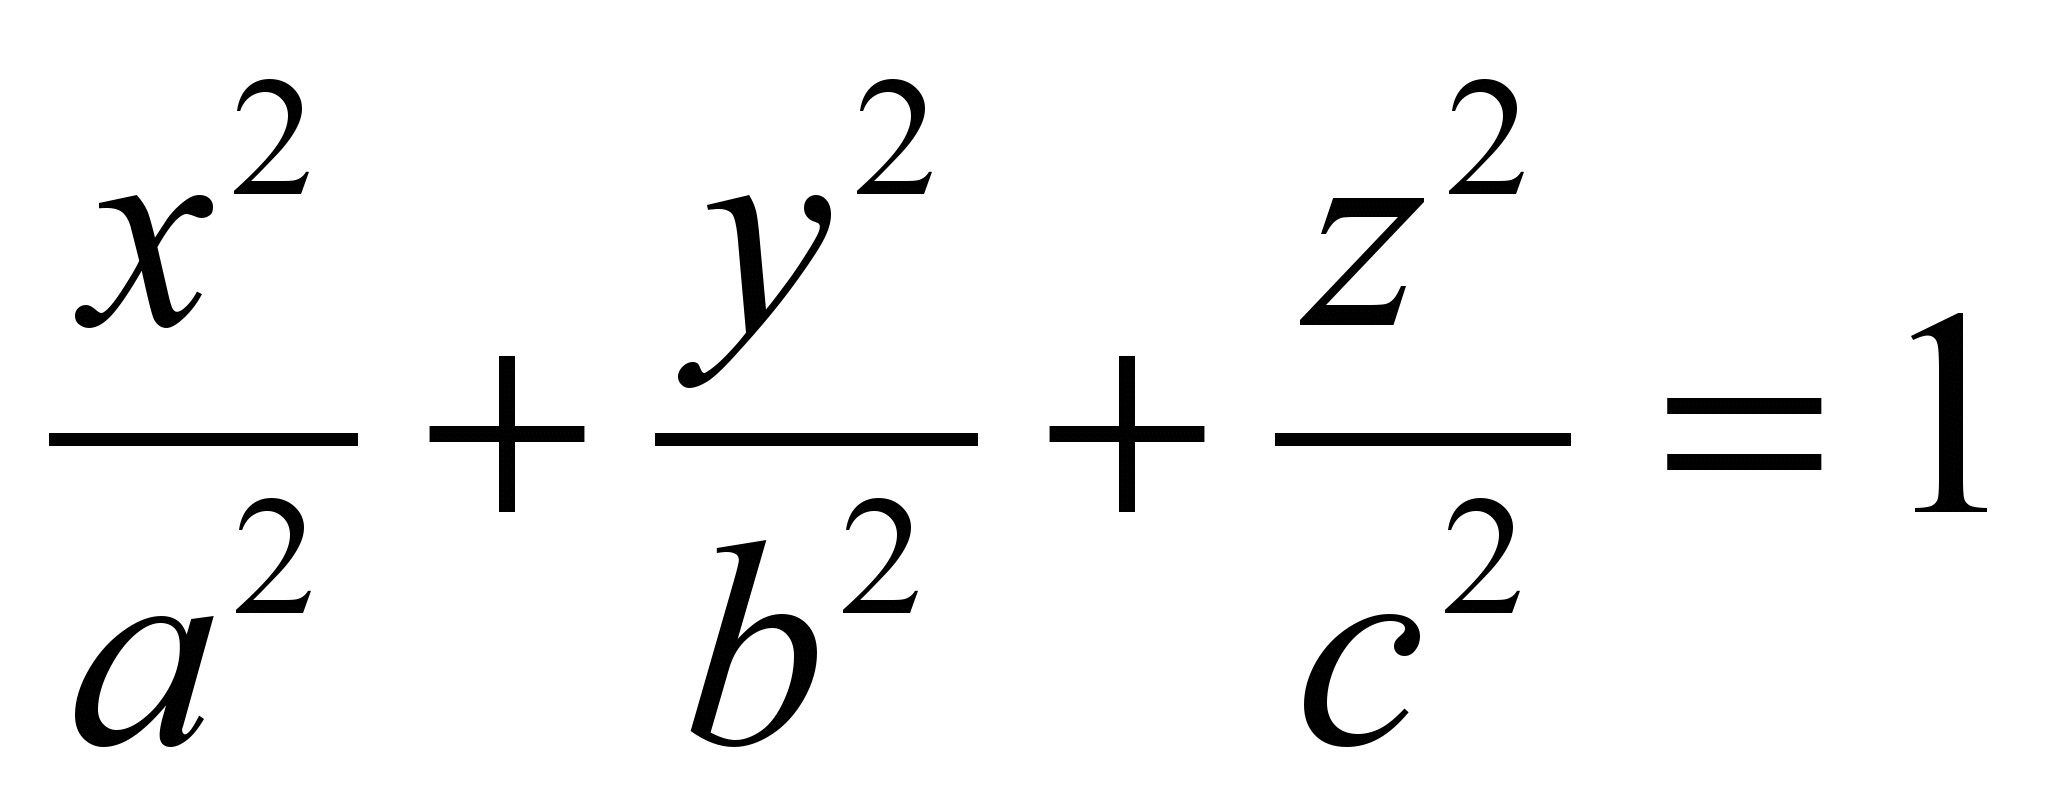 X2 y2 9 0. Конус второго порядка уравнение. Каноническое уравнение конуса. Уравнения поверхностей. Уравнение конуса 2 порядка.